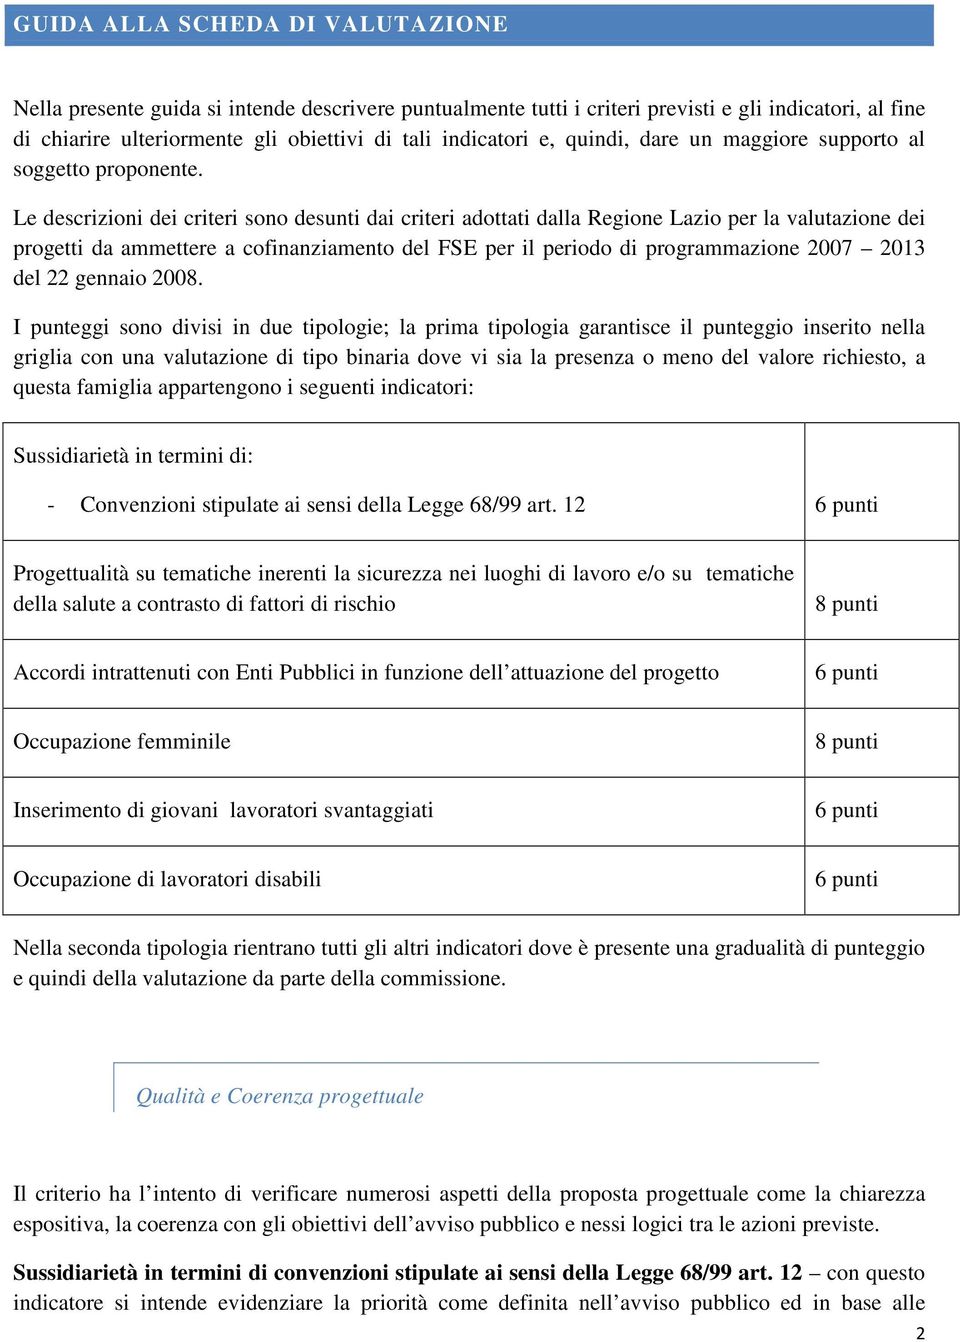 Le descrizioni dei criteri sono desunti dai criteri adottati dalla Regione Lazio per la valutazione dei progetti da ammettere a cofinanziamento del FSE per il periodo di programmazione 2007 2013 del